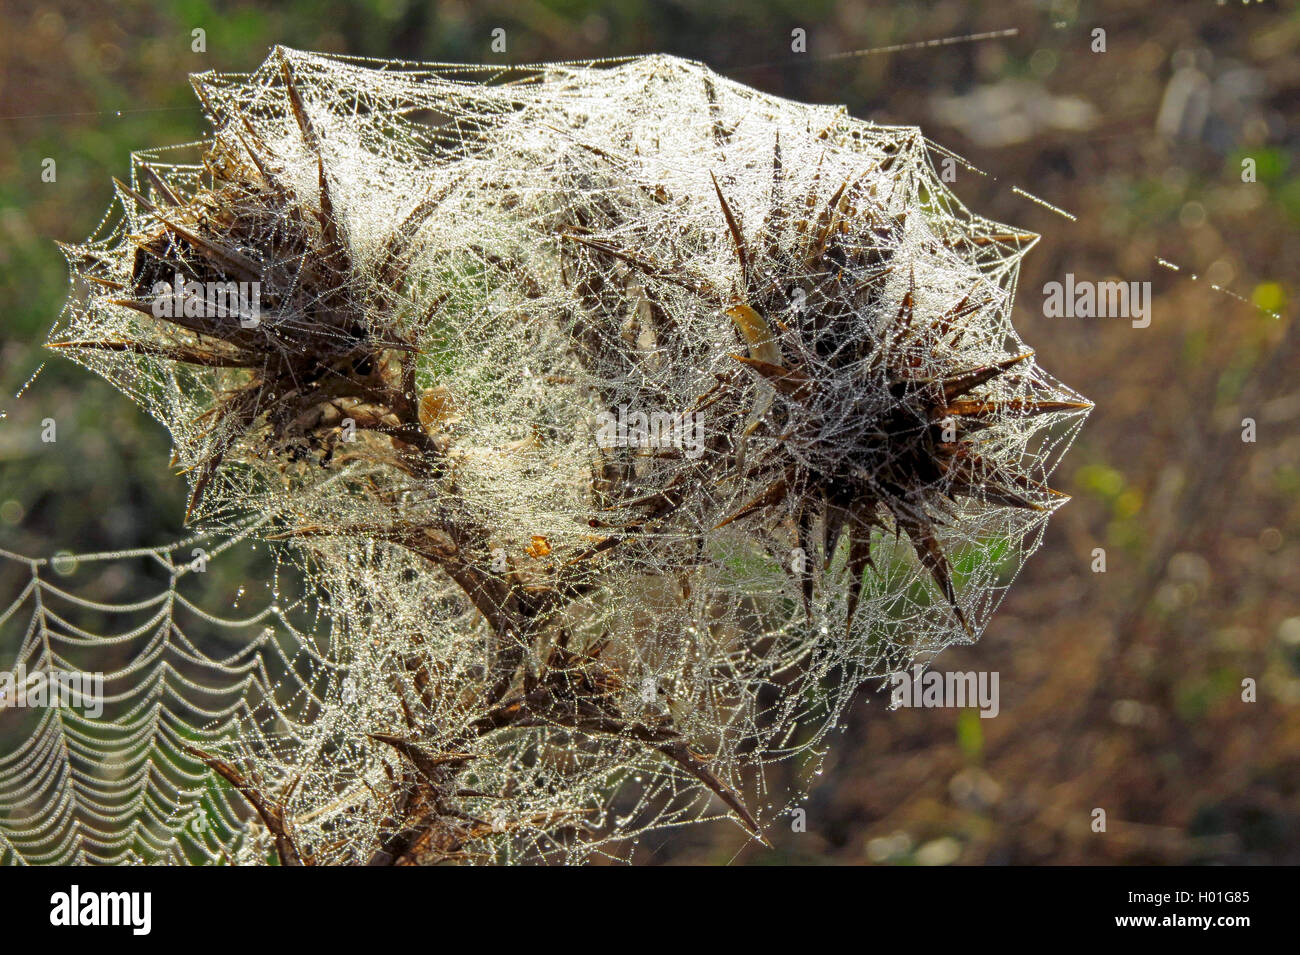 Taubenetztes Spinnennetz ueber Disteln, Spanien | araignée avec dewdrops sur inflorescence de chardons, Espagne | BLWS427096.jpg Banque D'Images